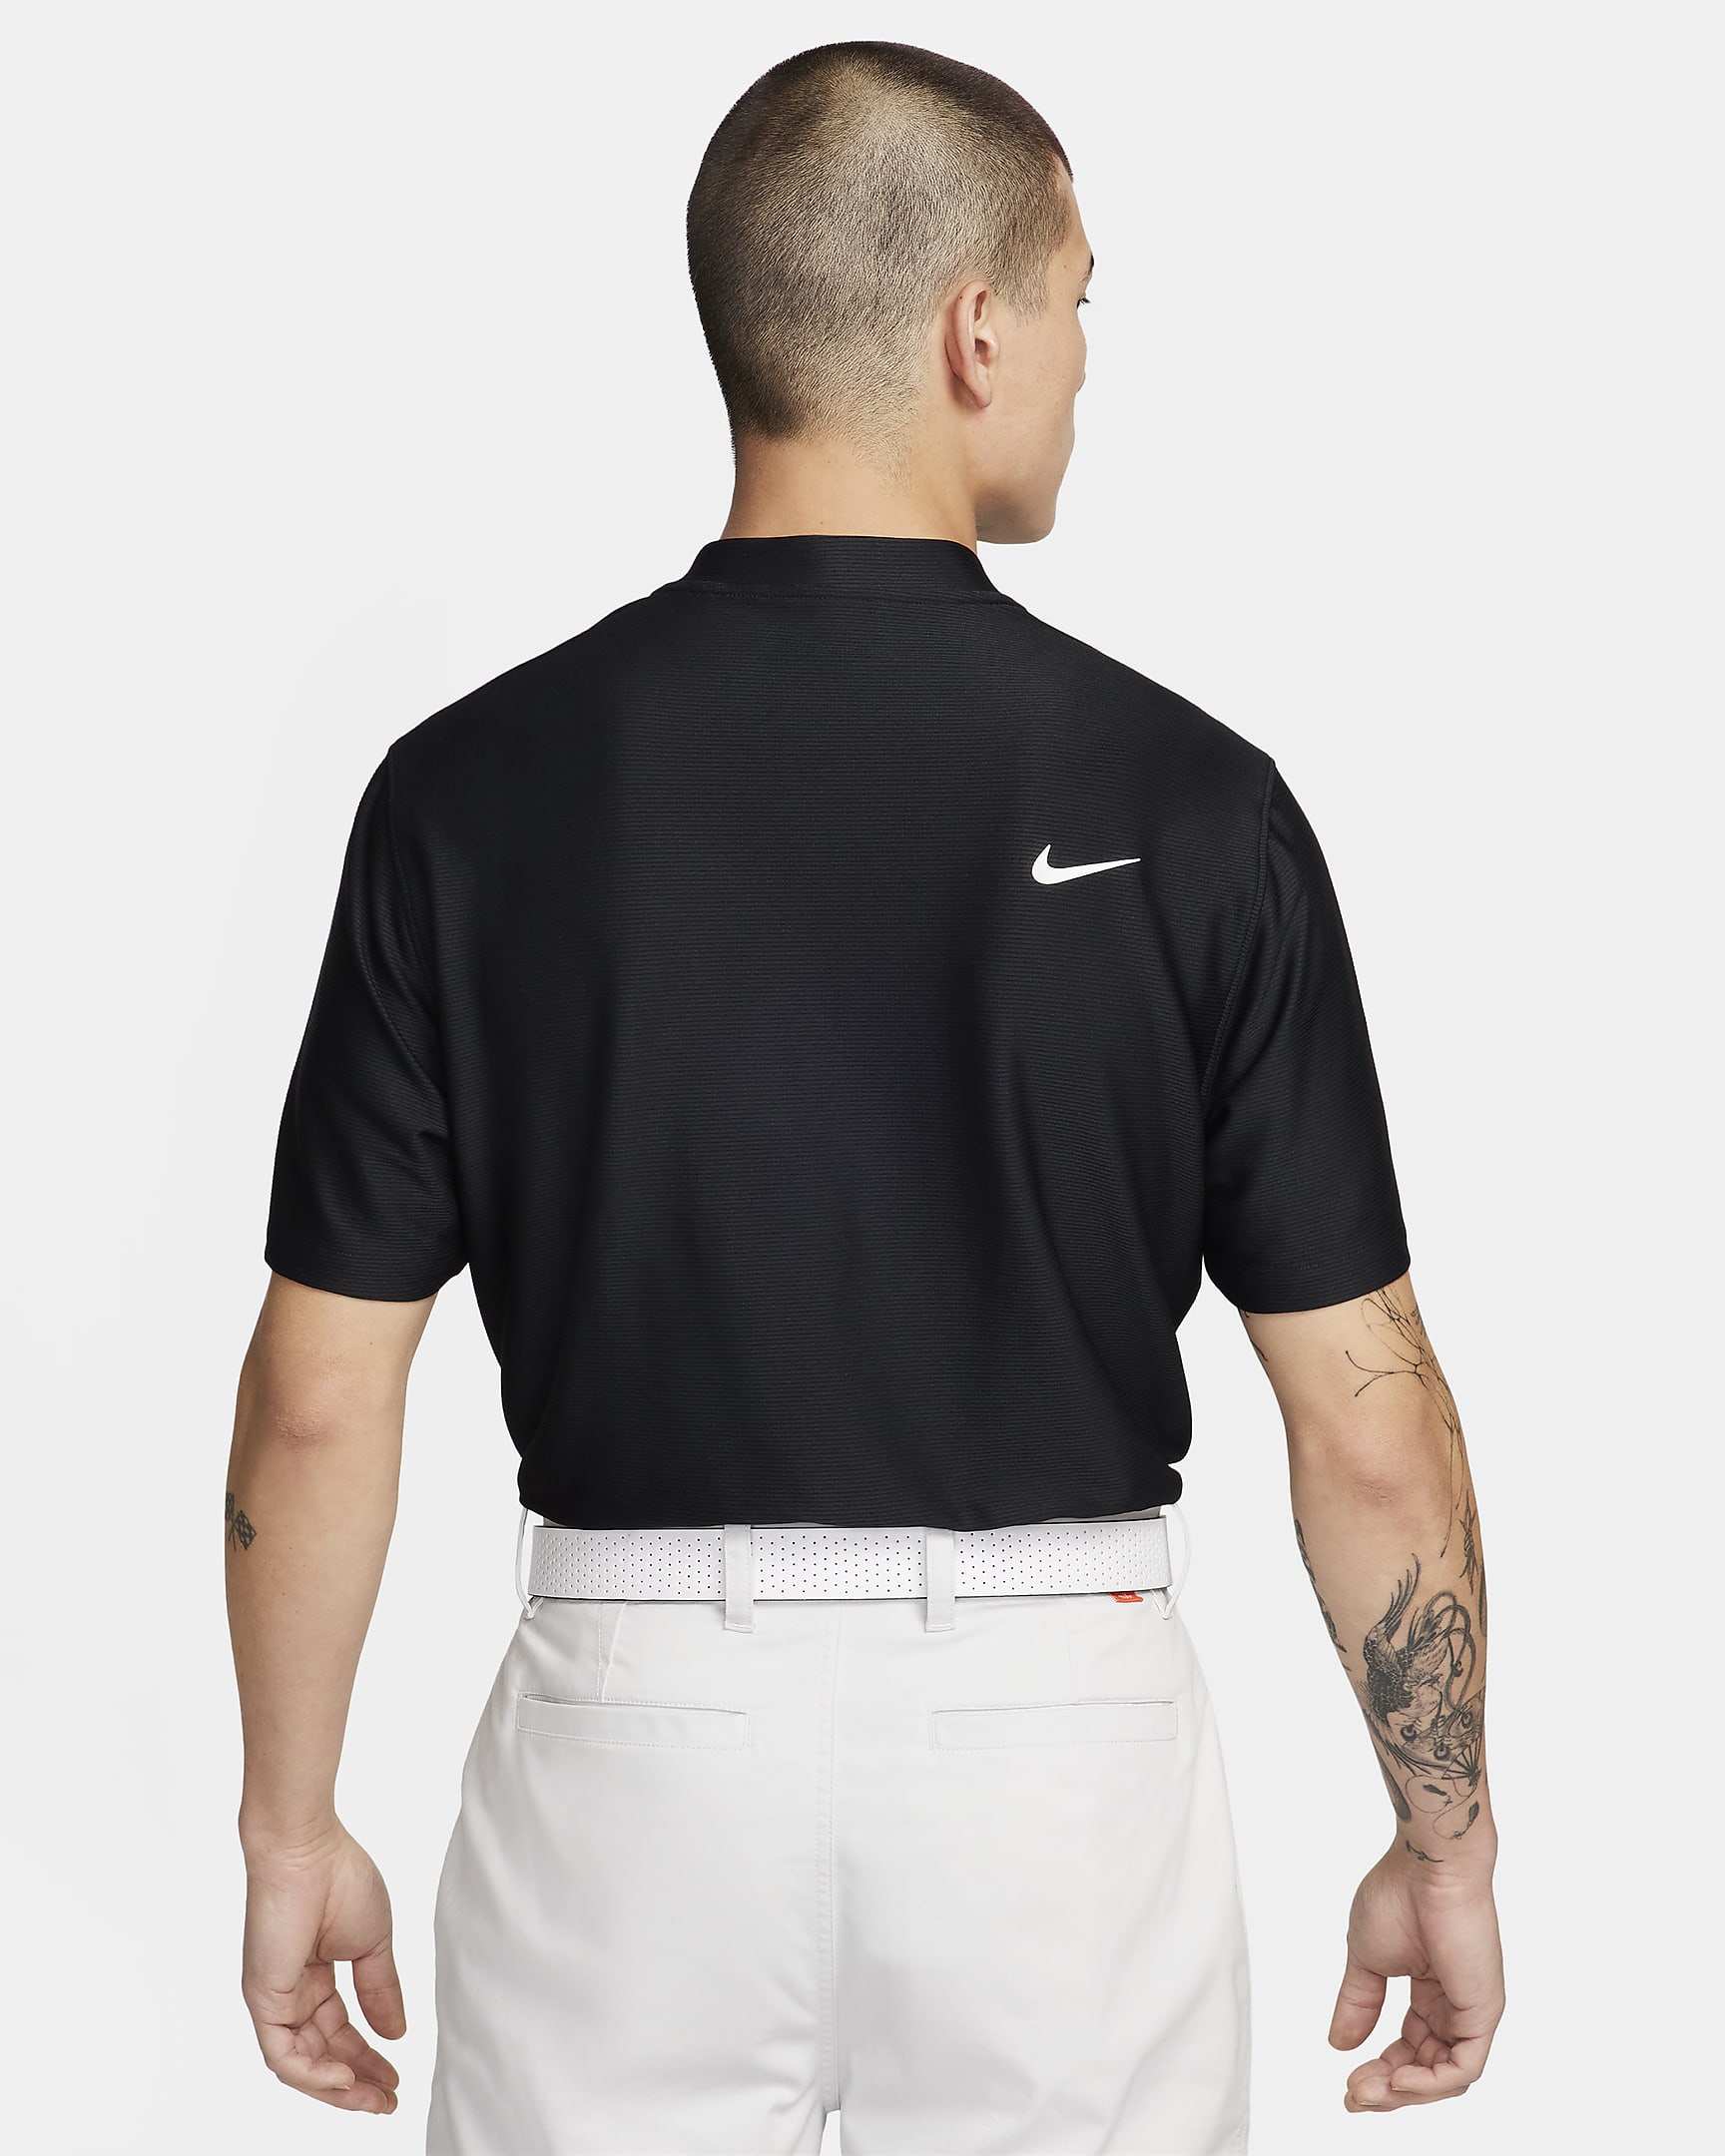 Nike Tour Men's Dri-FIT Golf Polo - Black/White